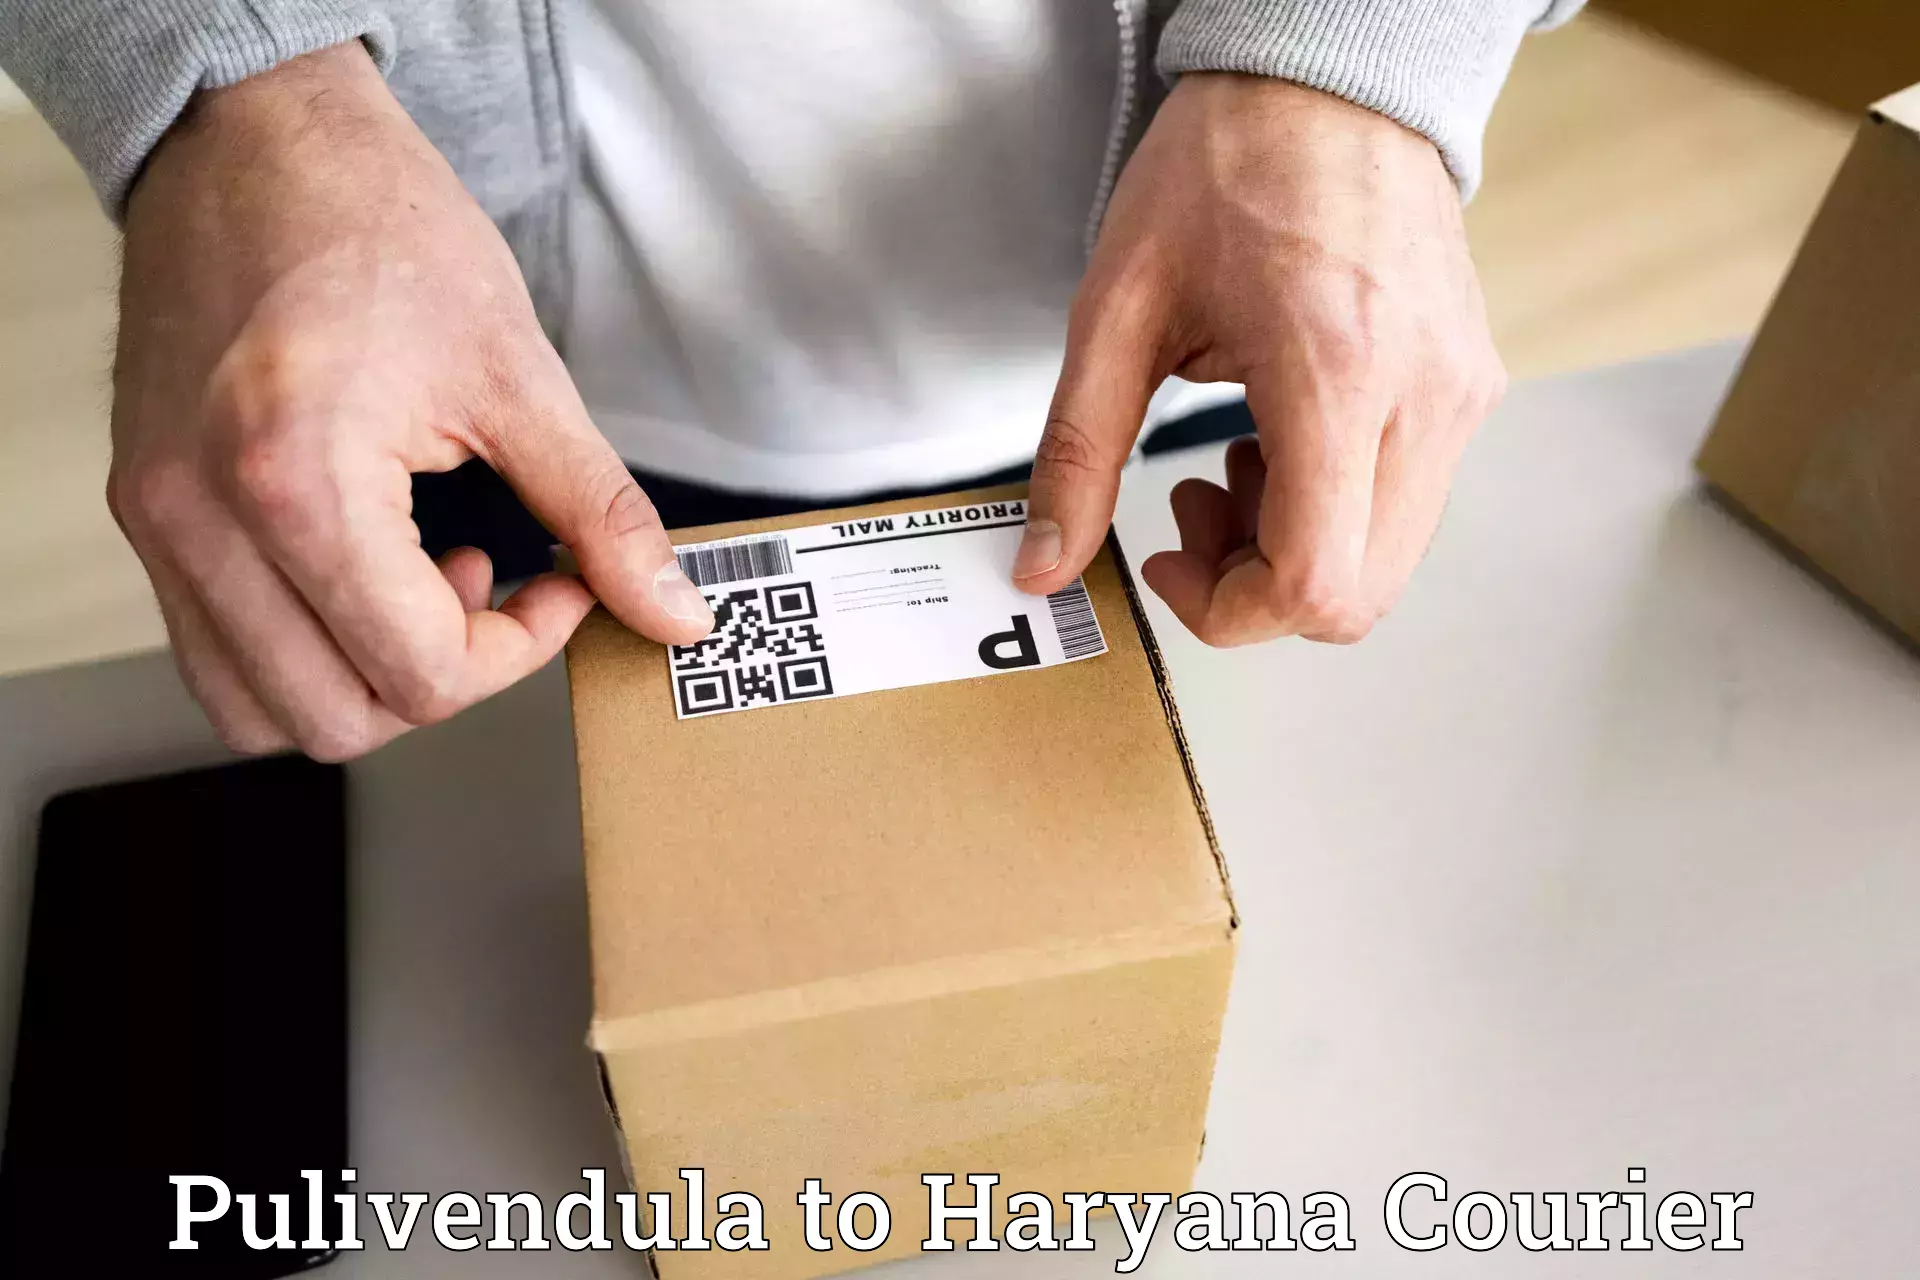 International parcel service Pulivendula to Jind